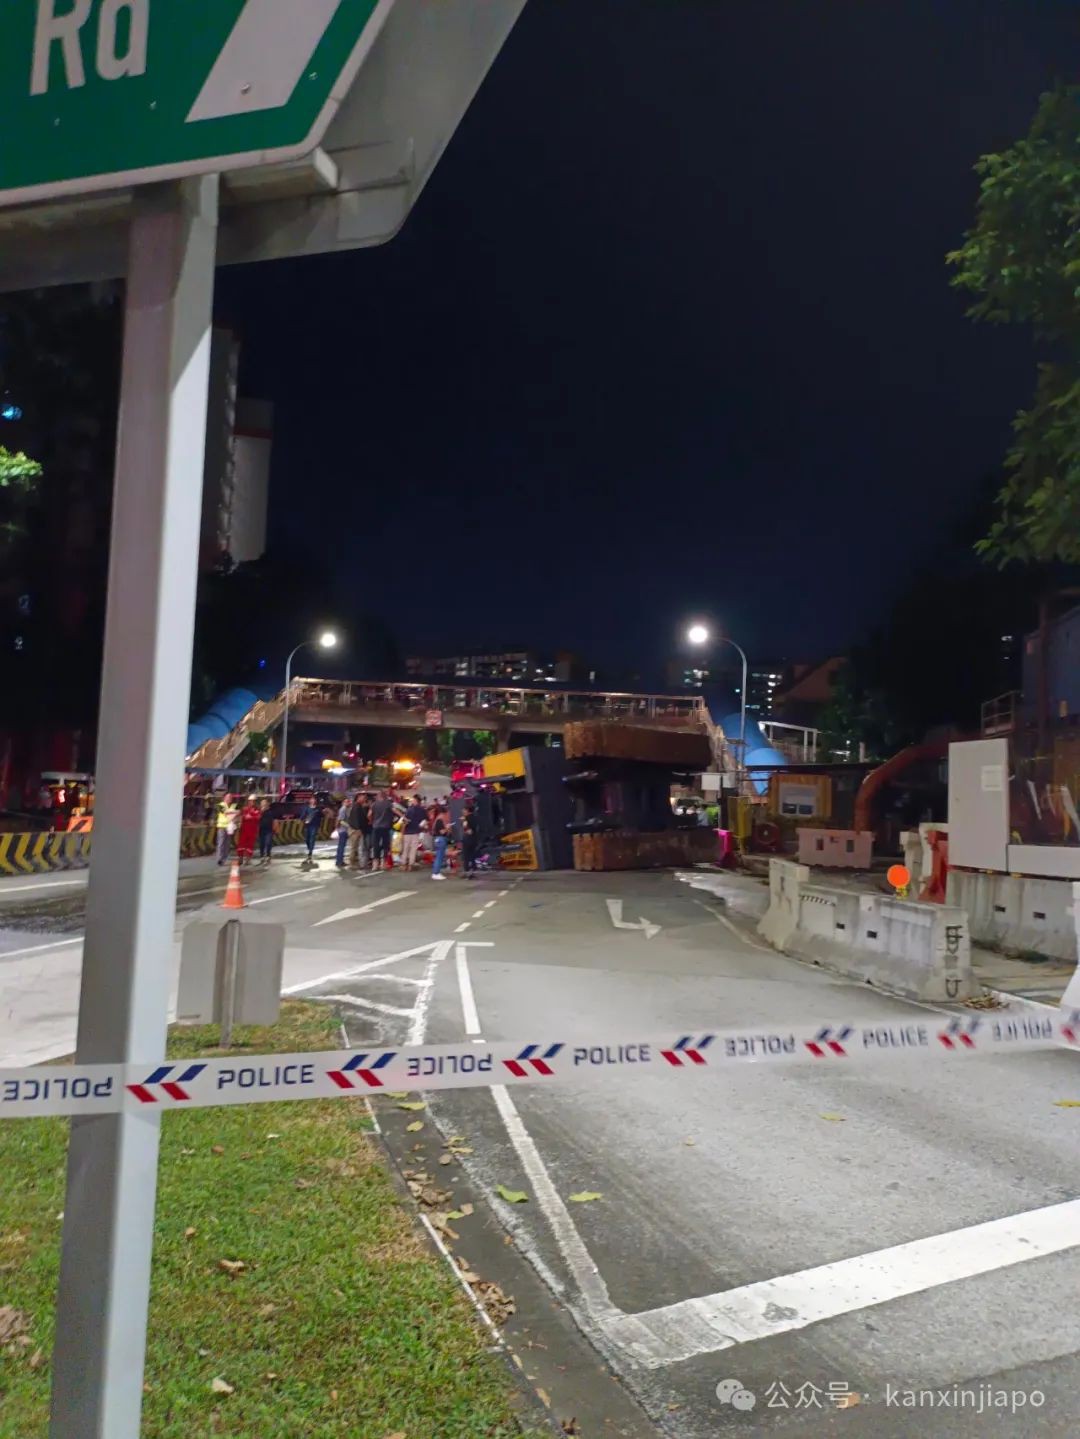 新加坡工地起重机倒塌砸中校车！车被压扁，现场图片曝光